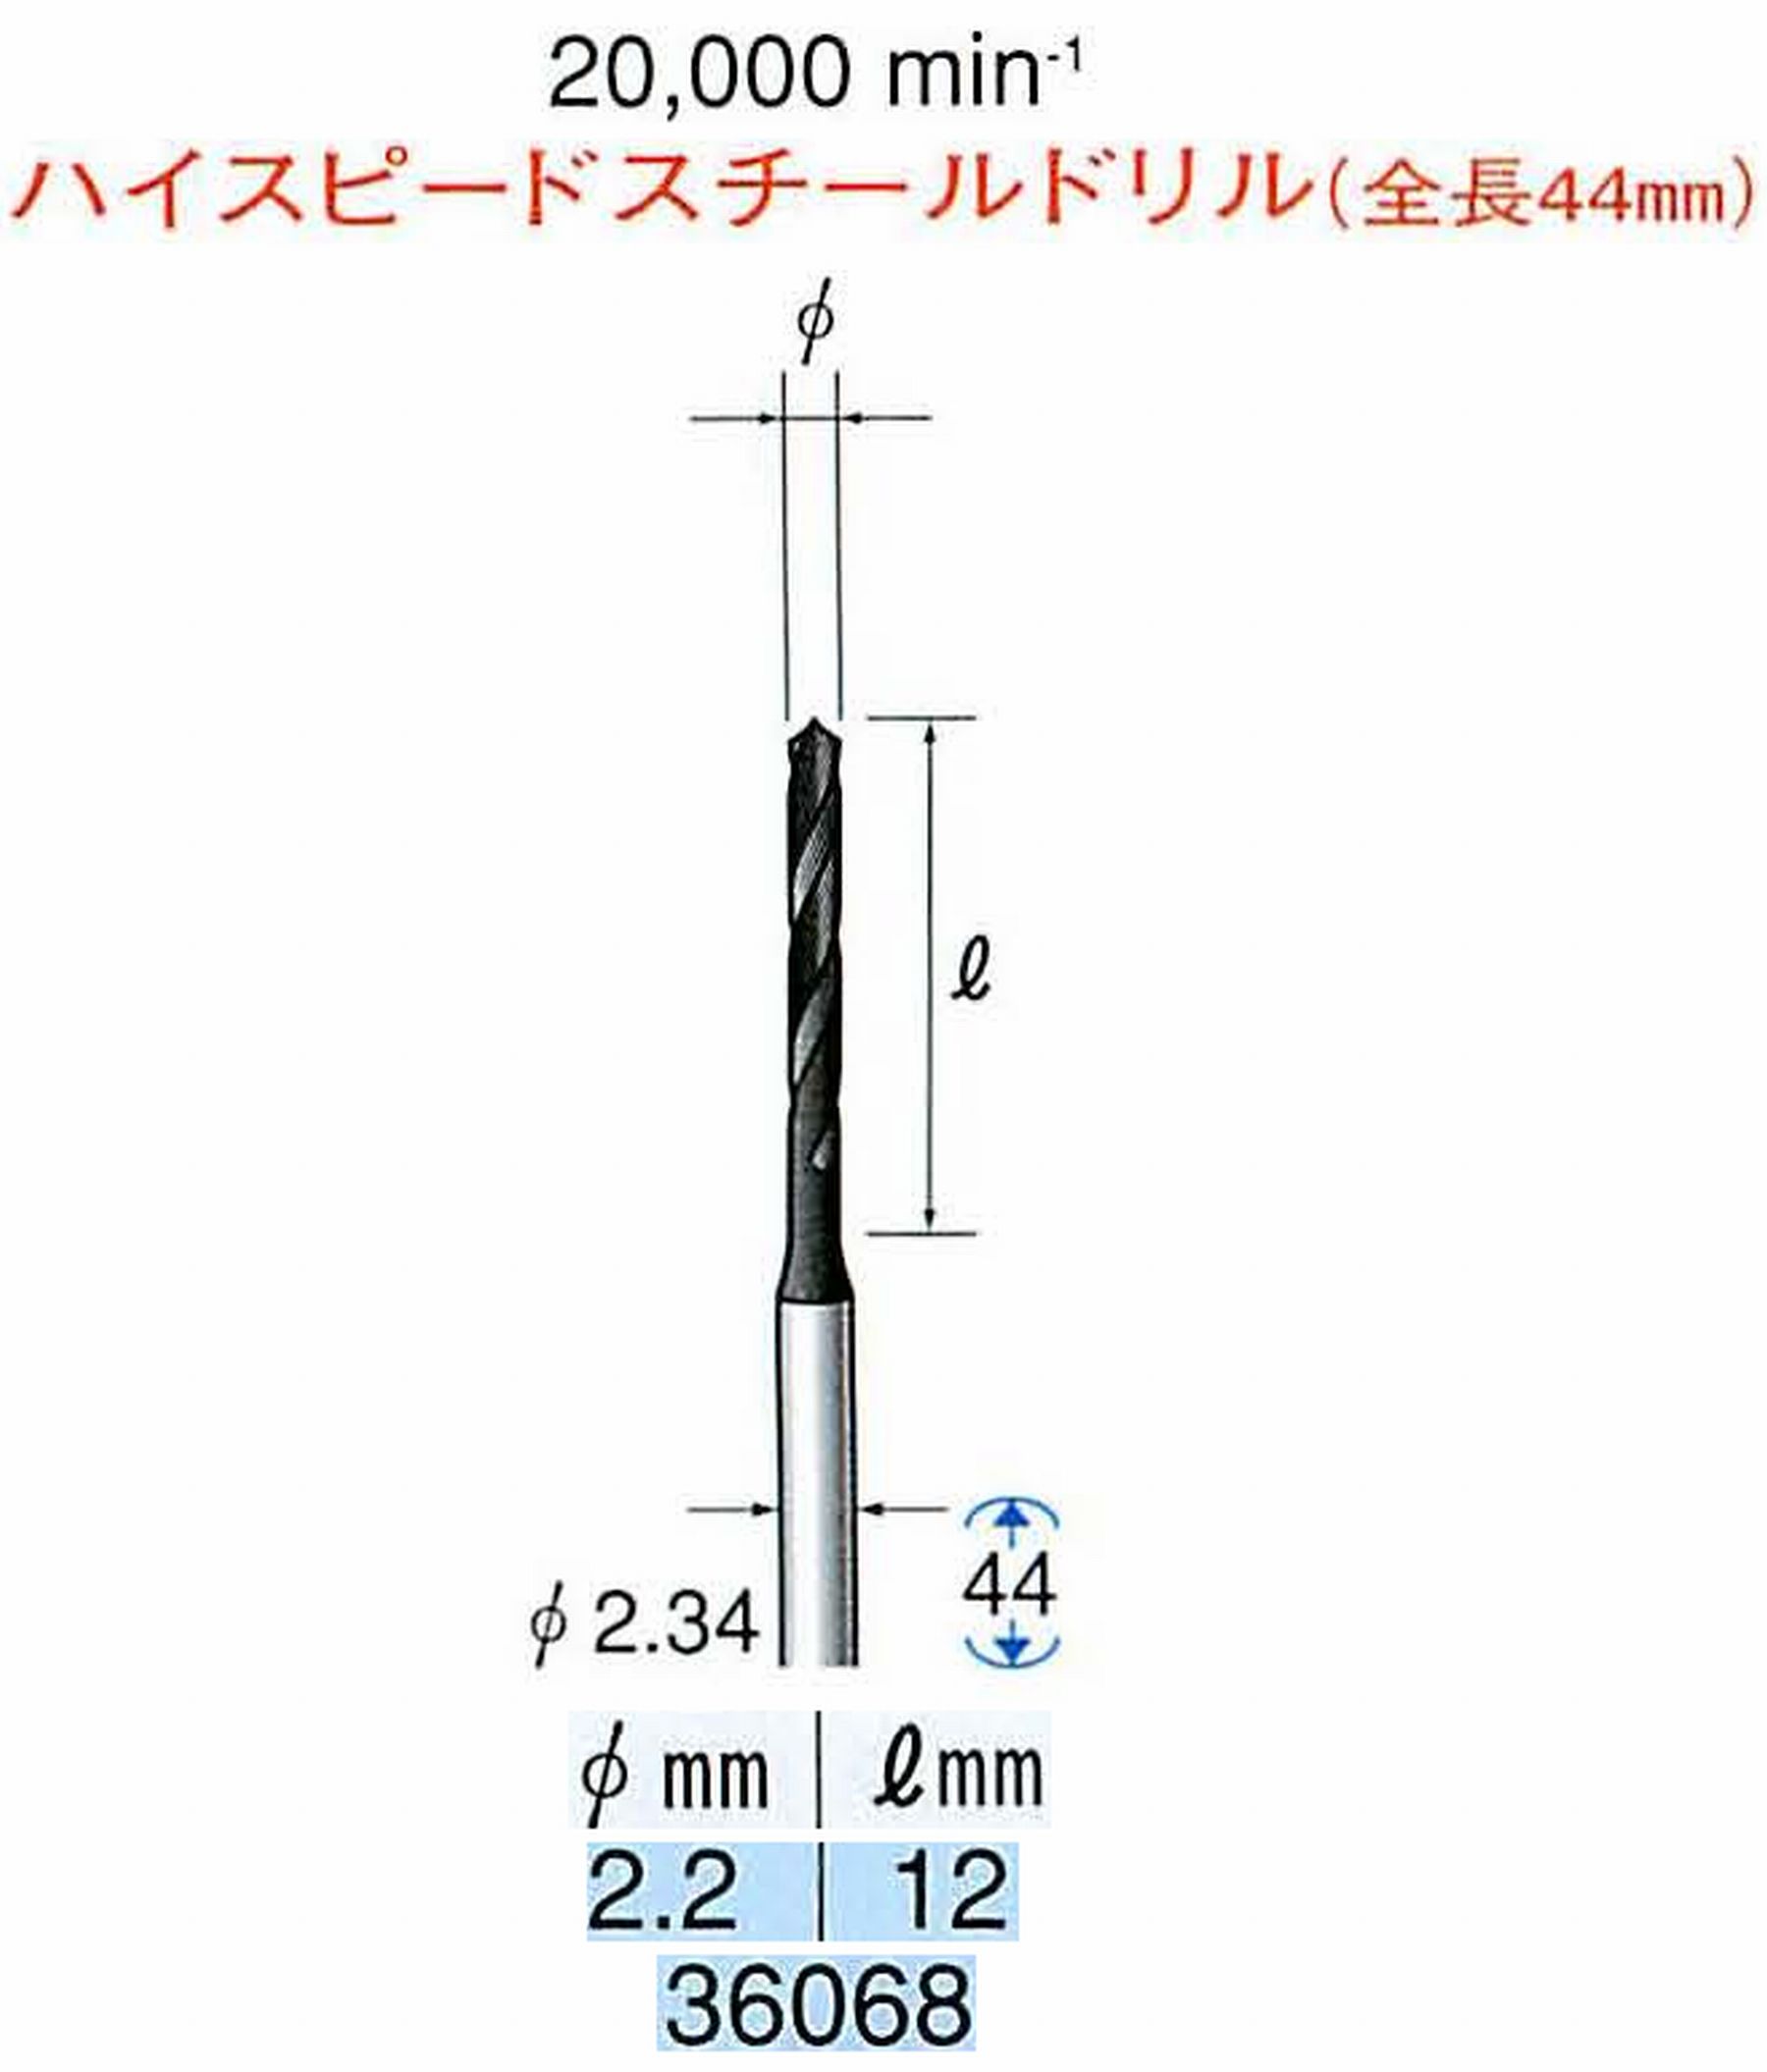 ナカニシ/NAKANISHI ツイストドリル ハイスピードスチール(H.S.S)ドリル(全長44mm) 軸径(シャンク) φ2.34mm 36068